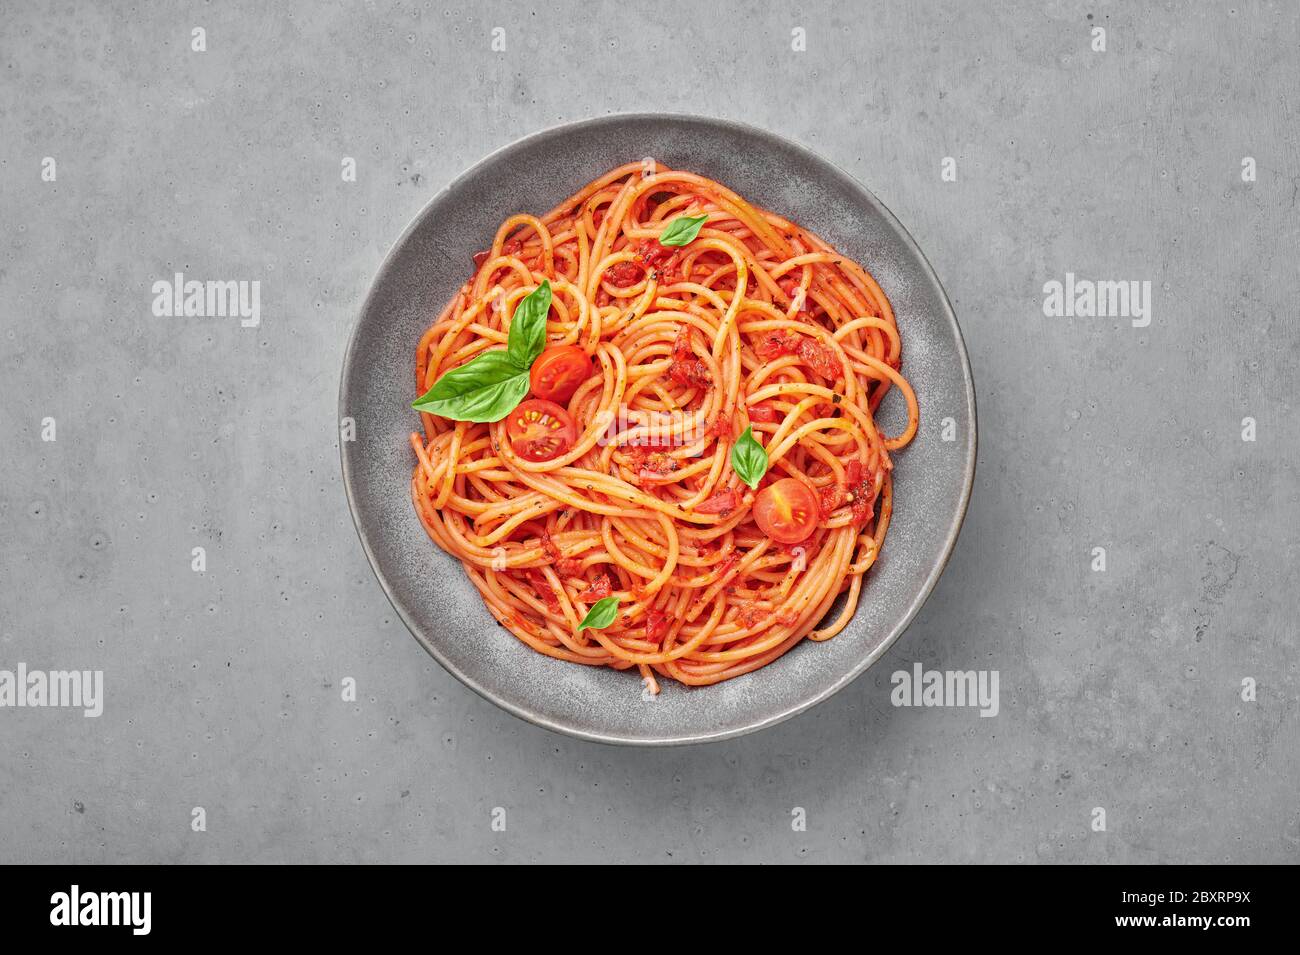 Spaghetti di pomodoro in ciotola grigia su fondo di cemento. La pasta con salsa di pomodoro è un piatto classico della cucina italiana. Popolare cucina italiana Foto Stock